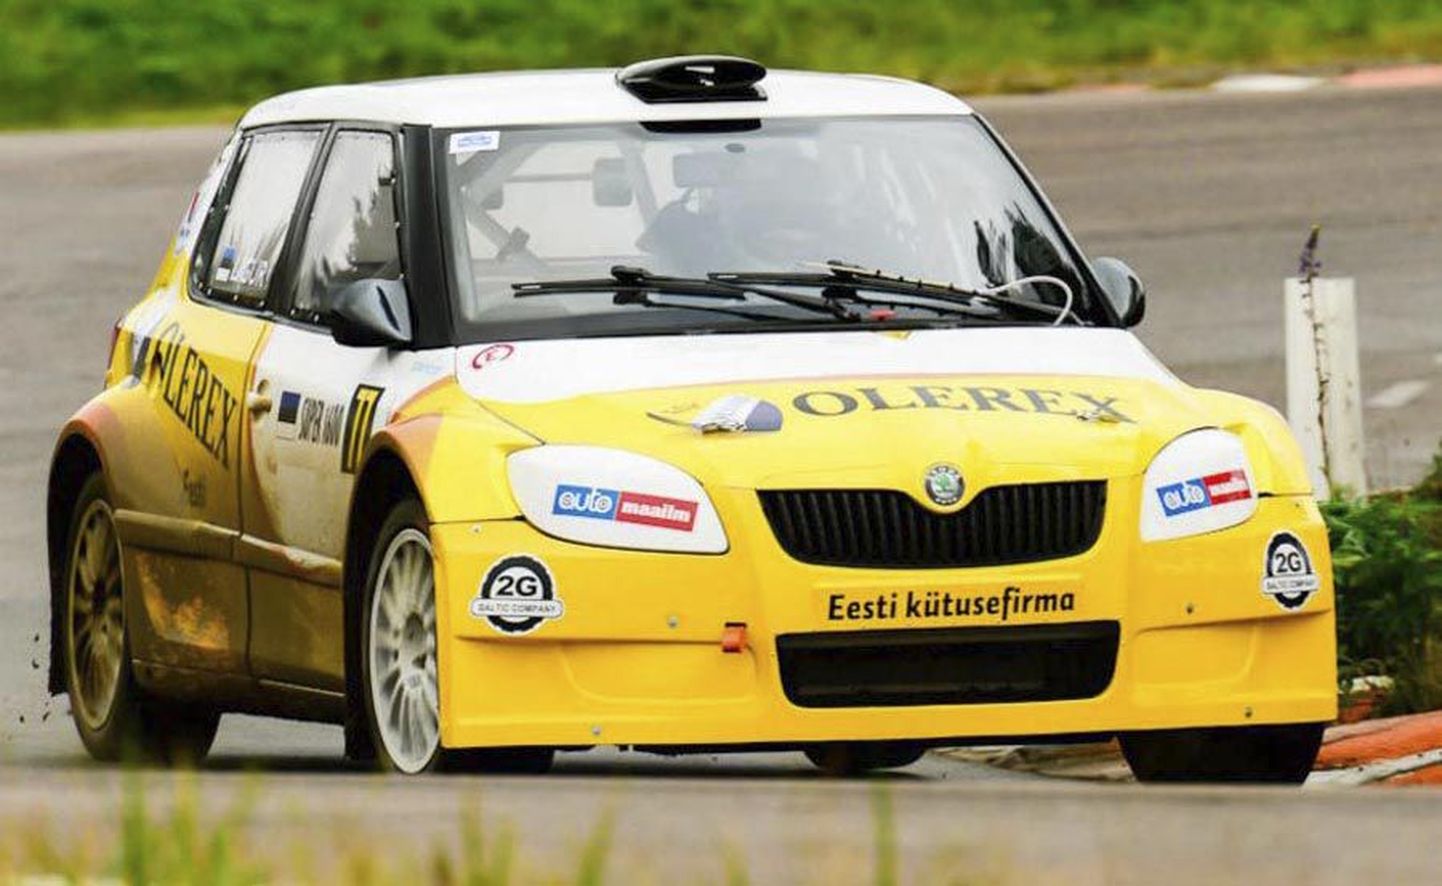 Uue võistlusautoga Soomes peetud Euroopa rallikrossi meistrivõistluste etapil kaasa teinud Janno Ligur teenis esimese eestlasena selles sarjas Super 1600 masinaklassis punkti.